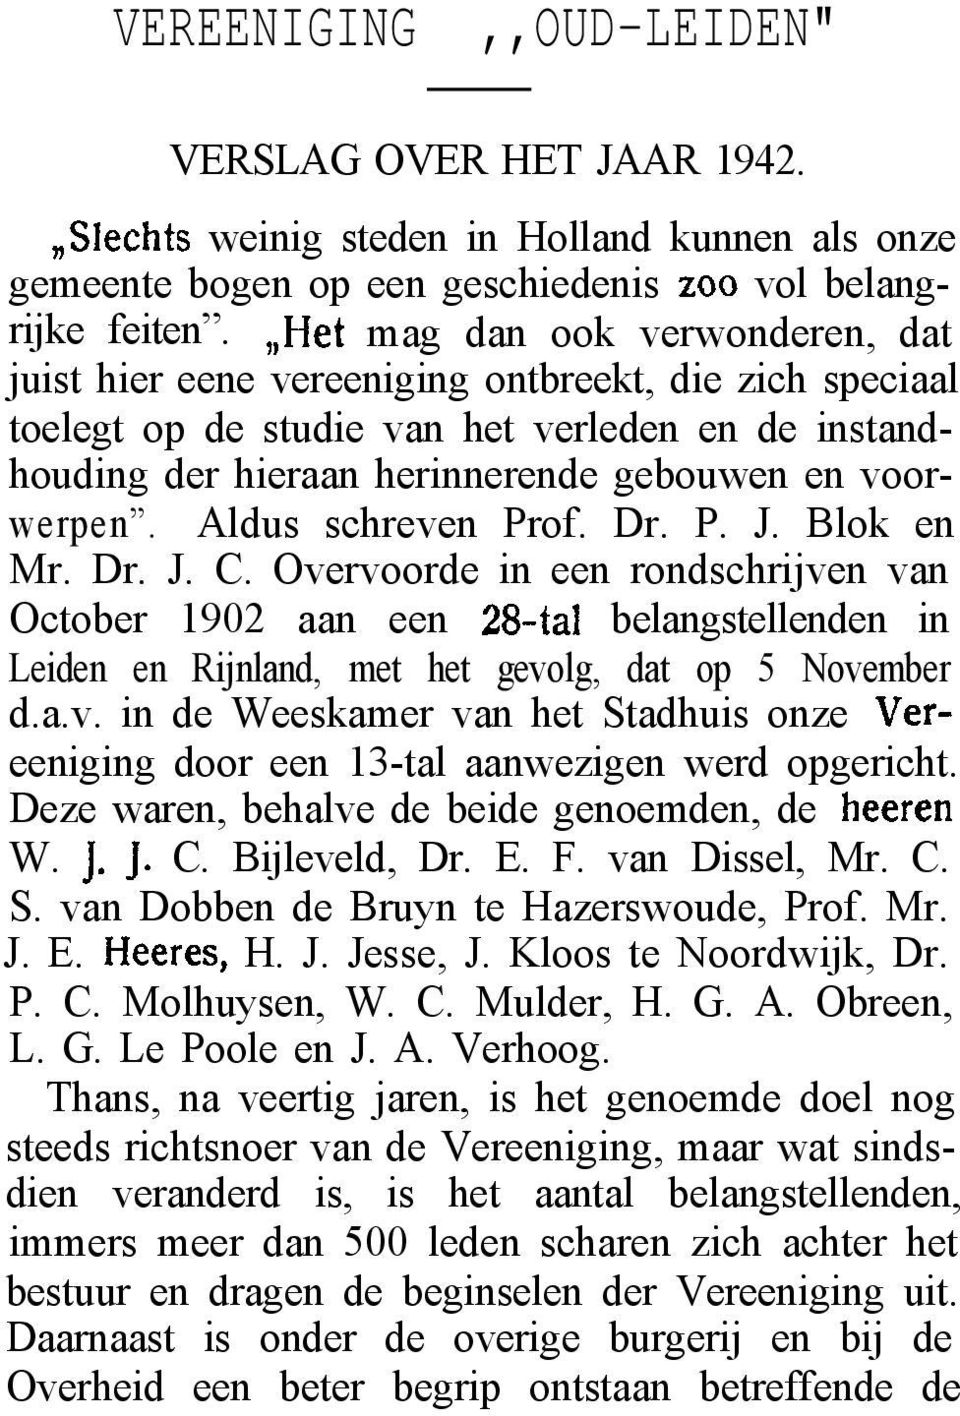 Aldus schreven Prof. Dr. P. J. Blok en Mr. Dr. J. C. Overvoorde in een rondschrijven van October 1902 aan een 2%tal belangstellenden in Leiden en Rijnland, met het gevolg, dat op 5 November d.a.v. in de Weeskamer van het Stadhuis onze Vereeniging door een 13-tal aanwezigen werd opgericht.